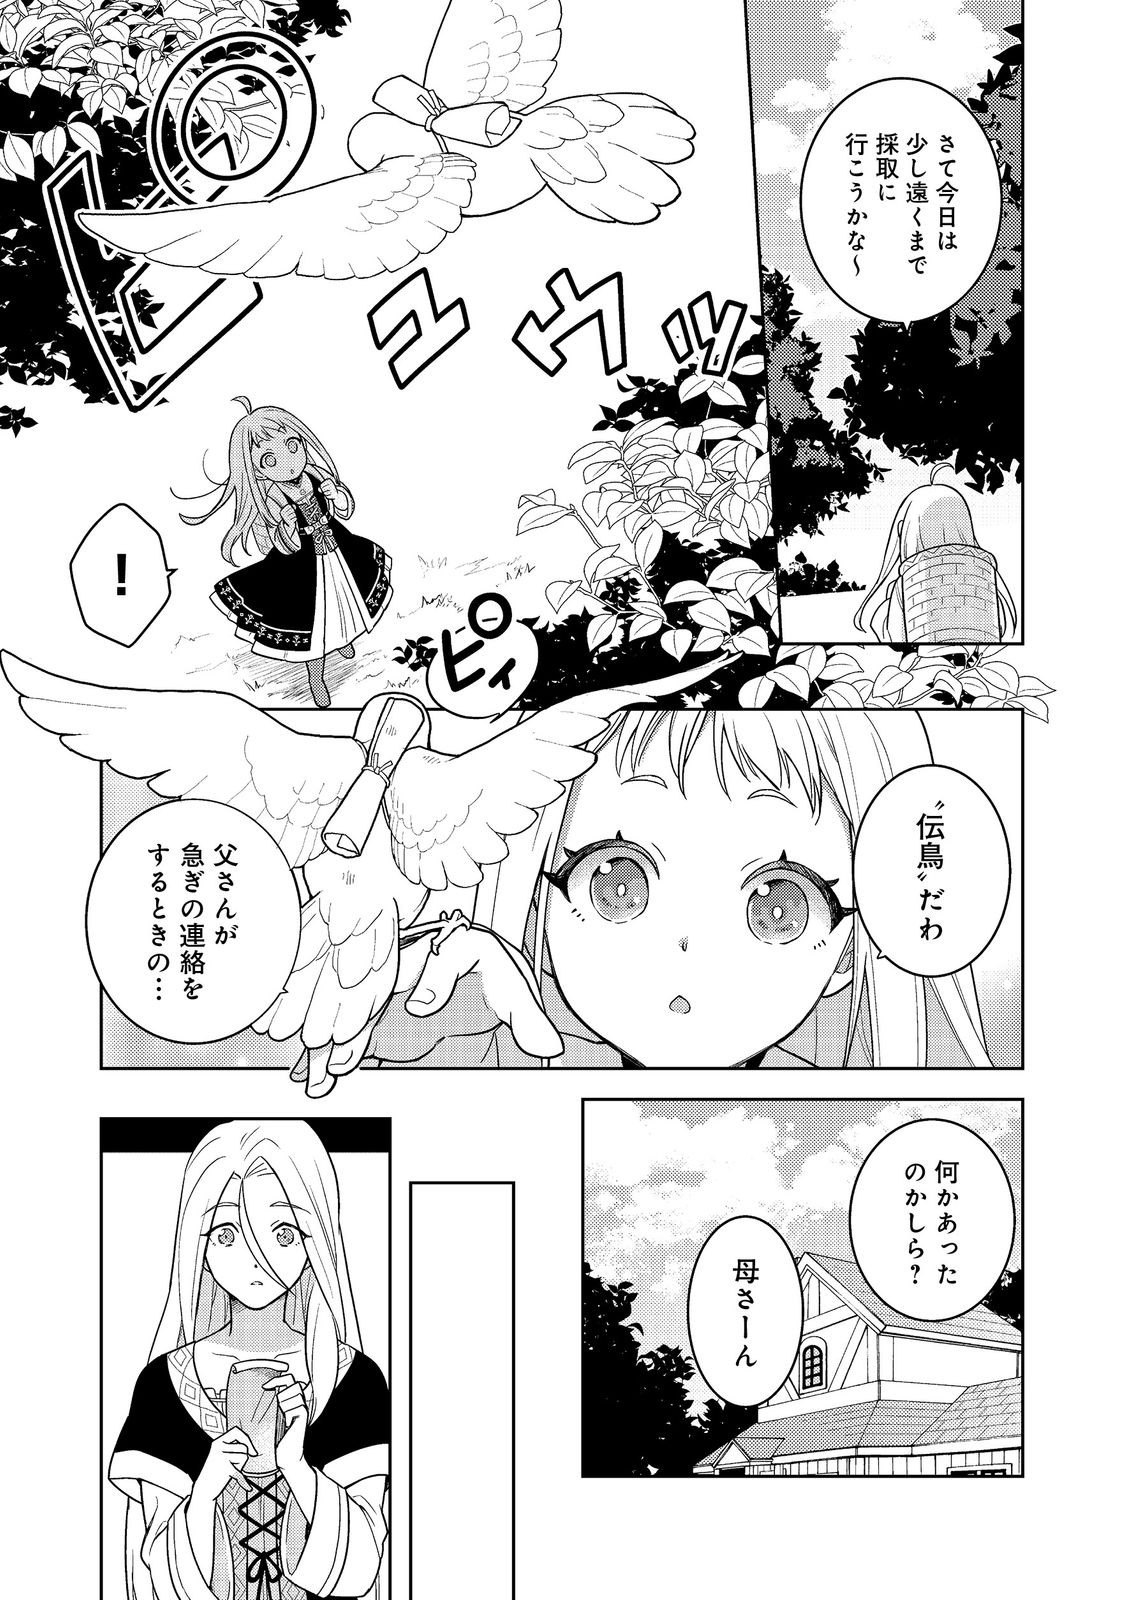 Mori no Hashikko no Chibi Majo-san - Chapter 1 - Page 18